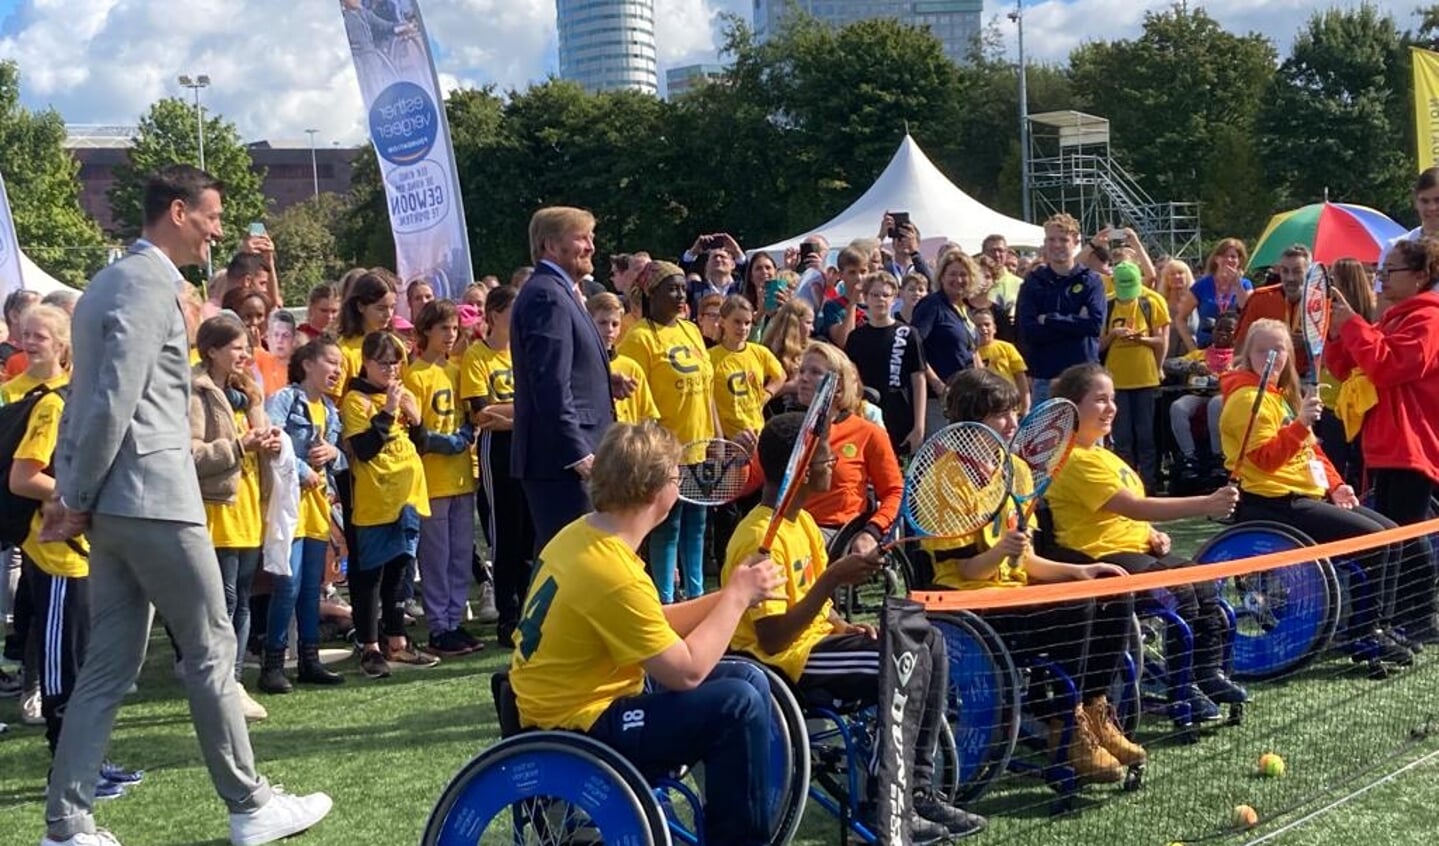 Koning Willem-Alexander bezoekt de ‘Toekomst’ in verband met 25-jarig jubileum Johan Cruyff Foundation.